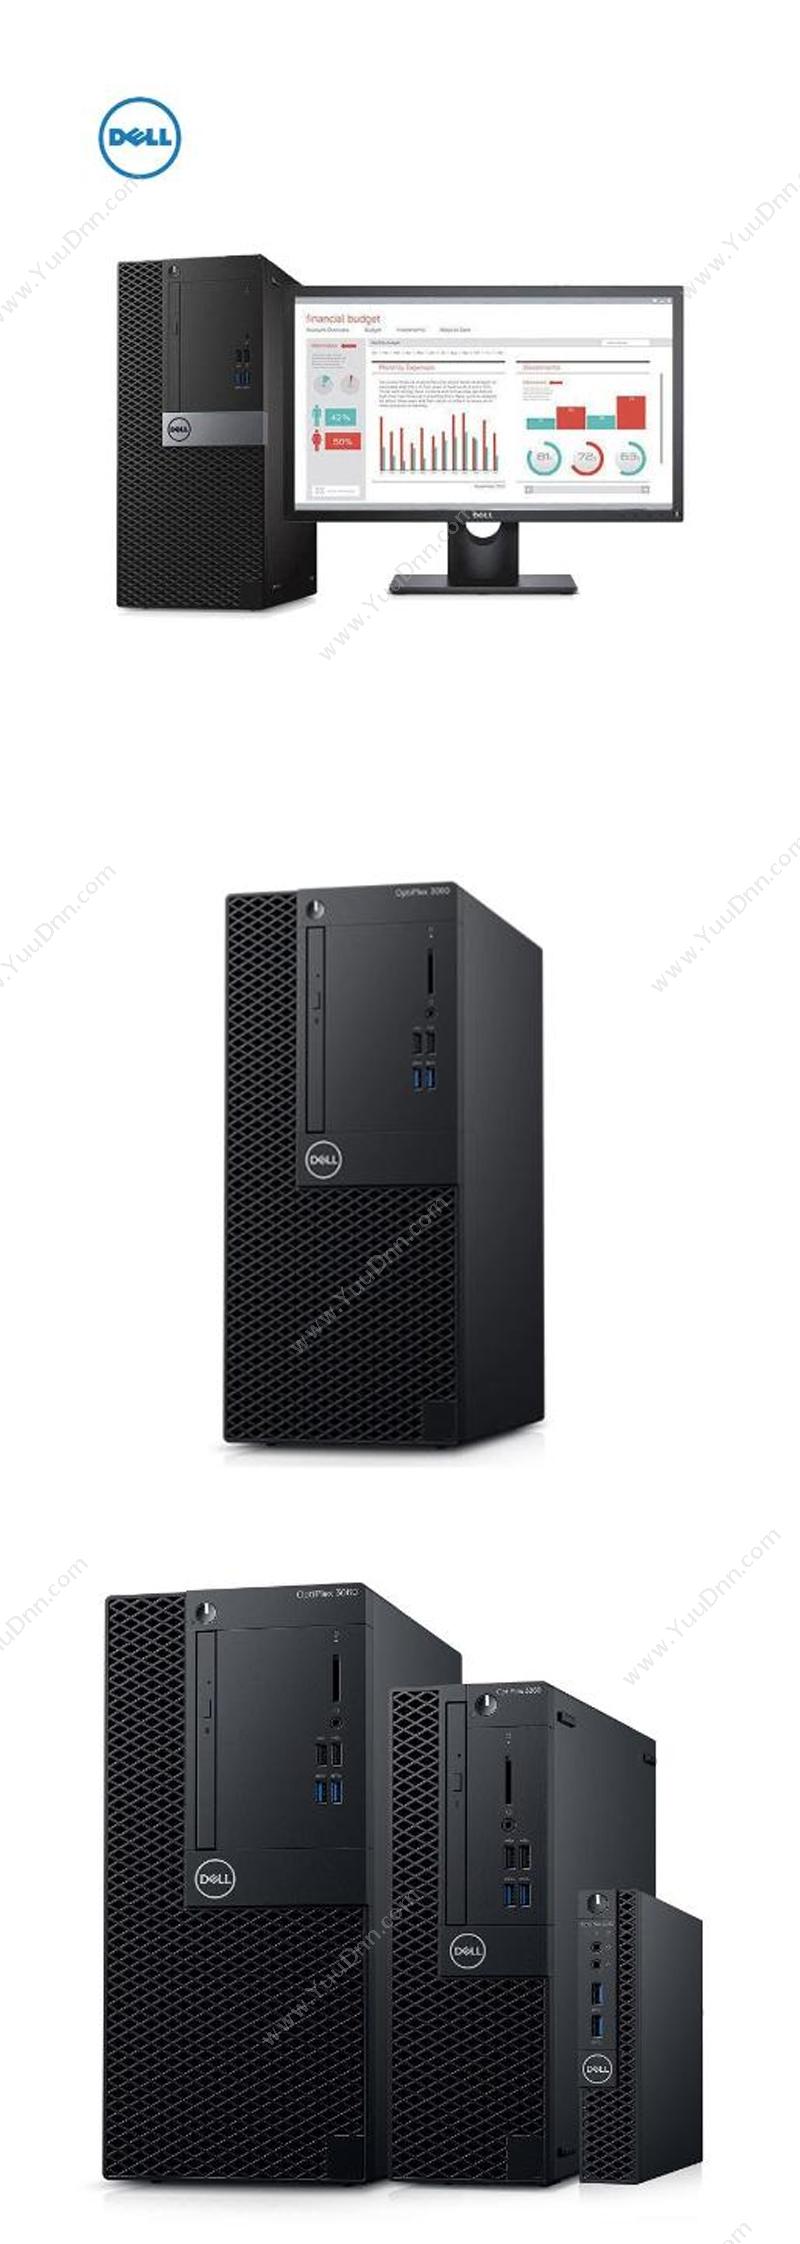 戴尔 Dell OptiPlex 3060 Tower 230782（i5-8500/4G/1T/2G独显/DVDRW/硬盘保护/19.5显示器） 台式机 台式电脑套机